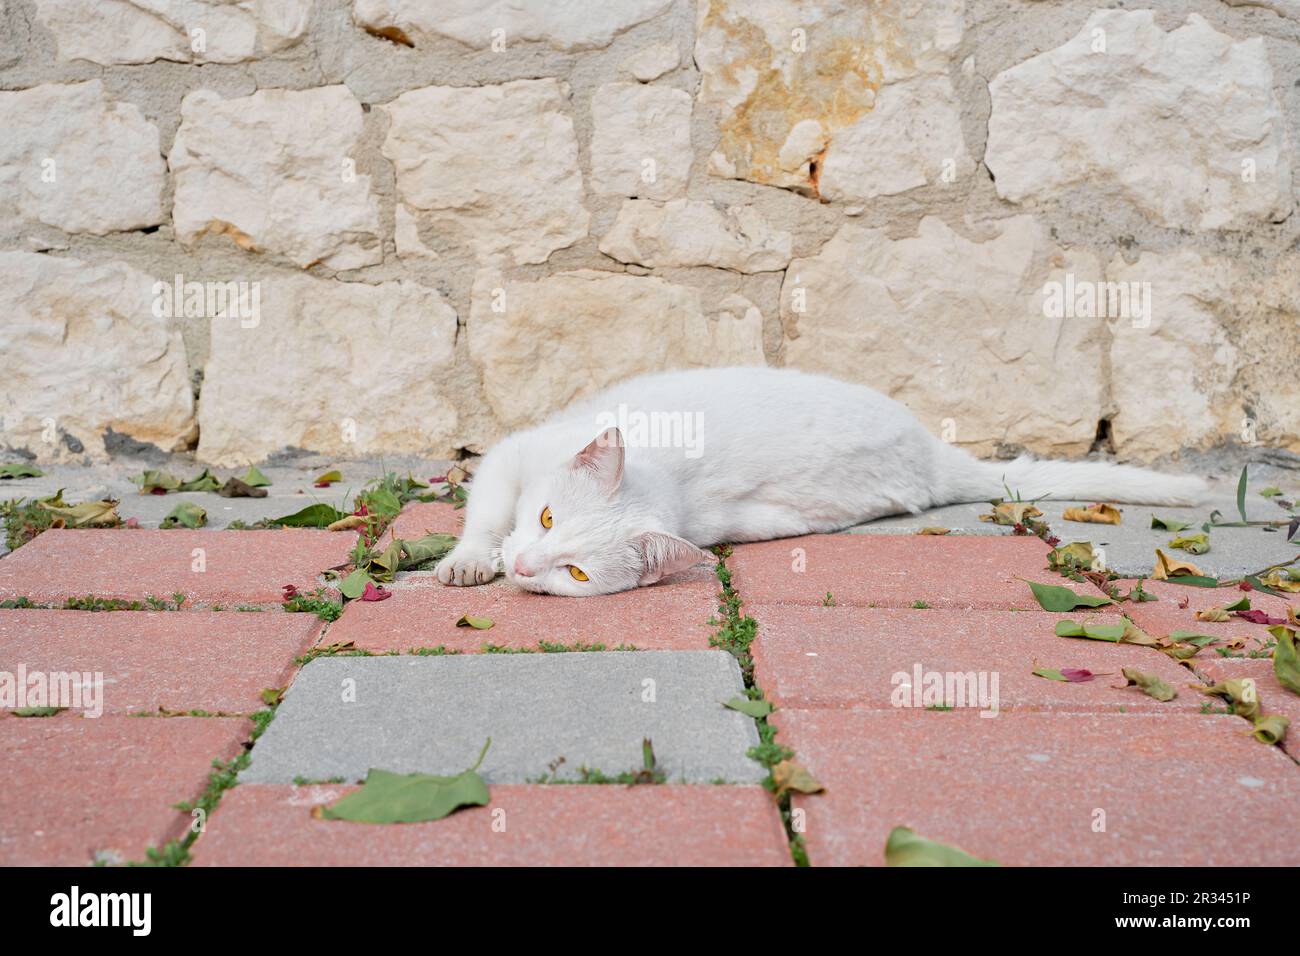 Il gatto senza dimora bianco giace sulle lastre di pavimentazione, crogiolandosi al sole, guardando la macchina fotografica. Cura degli animali, ecologia dell'ambiente urbano Foto Stock